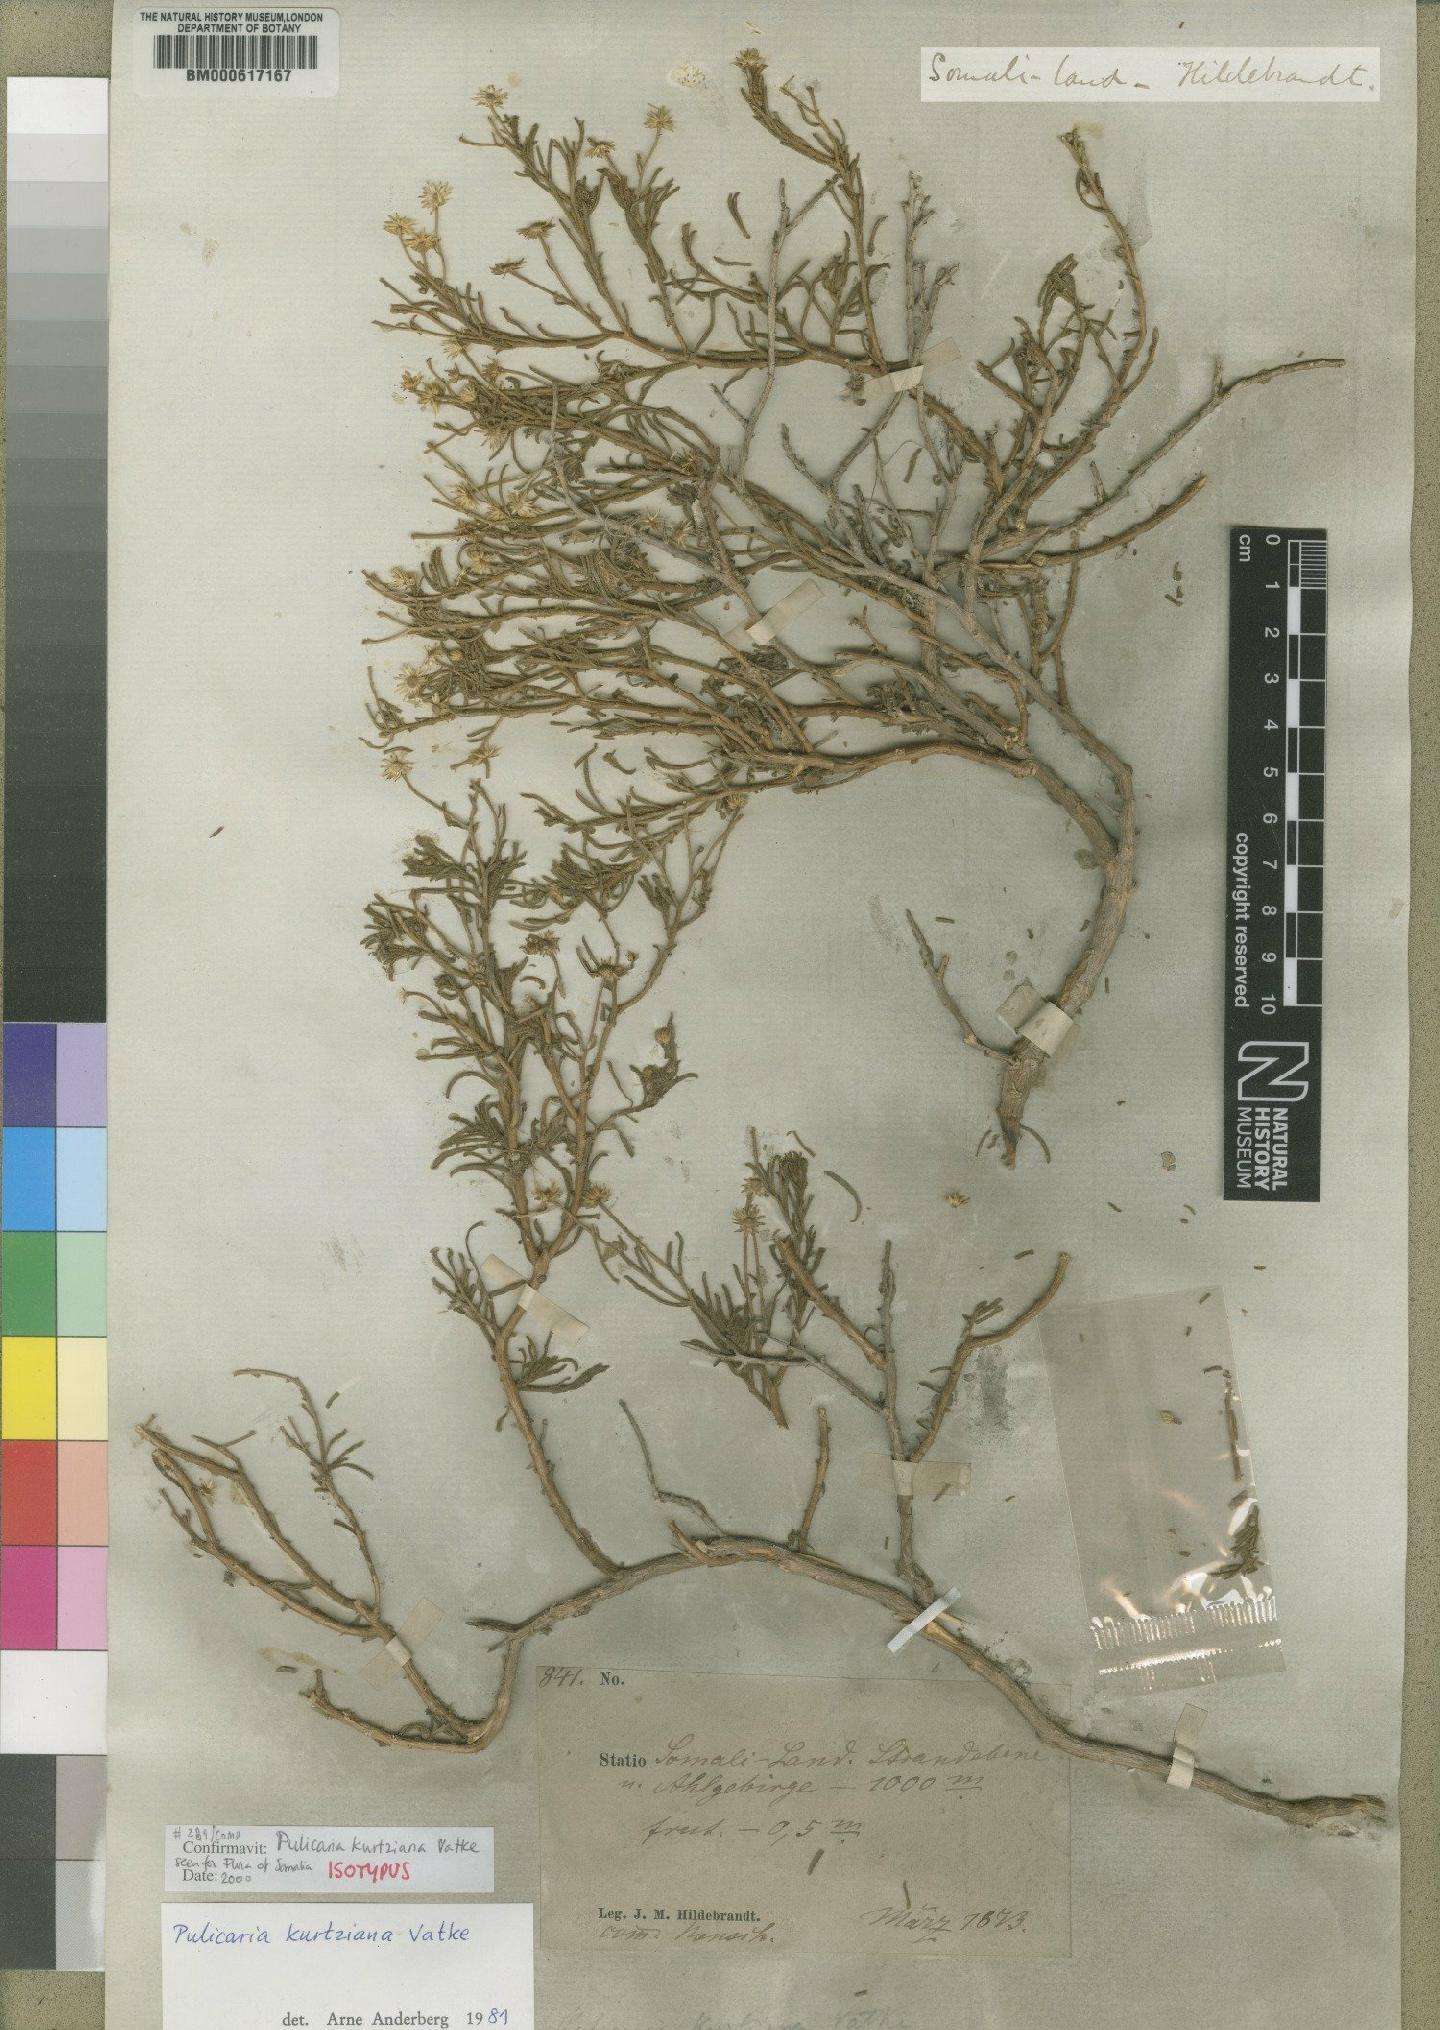 To NHMUK collection (Pulicaria kurtziana Vatke; Isotype; NHMUK:ecatalogue:4528496)